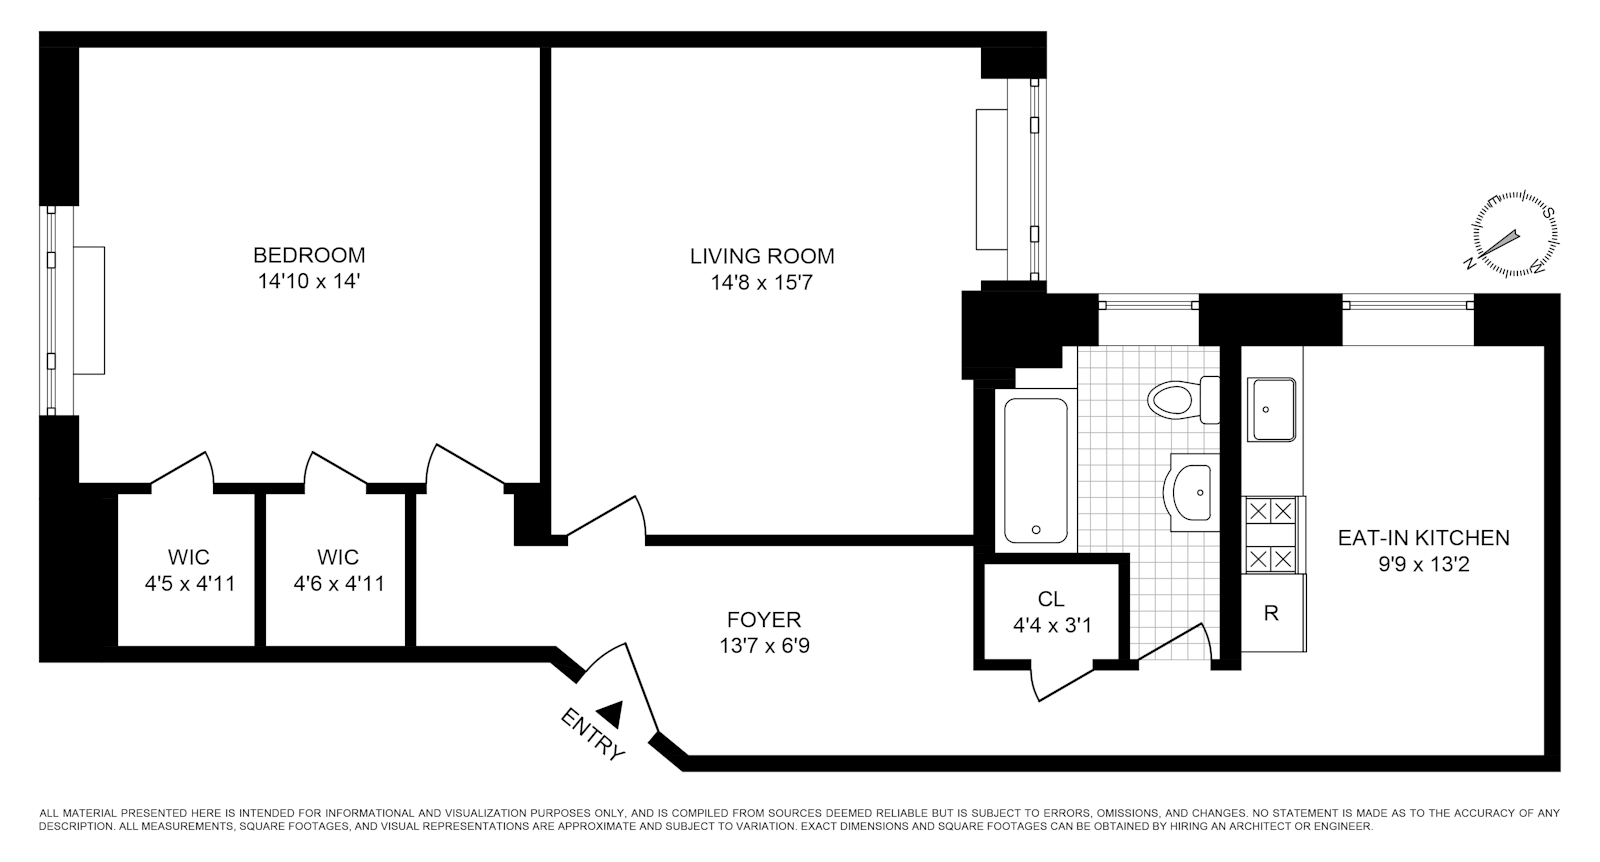 Floorplan for 310 West 79th Street, 1EF